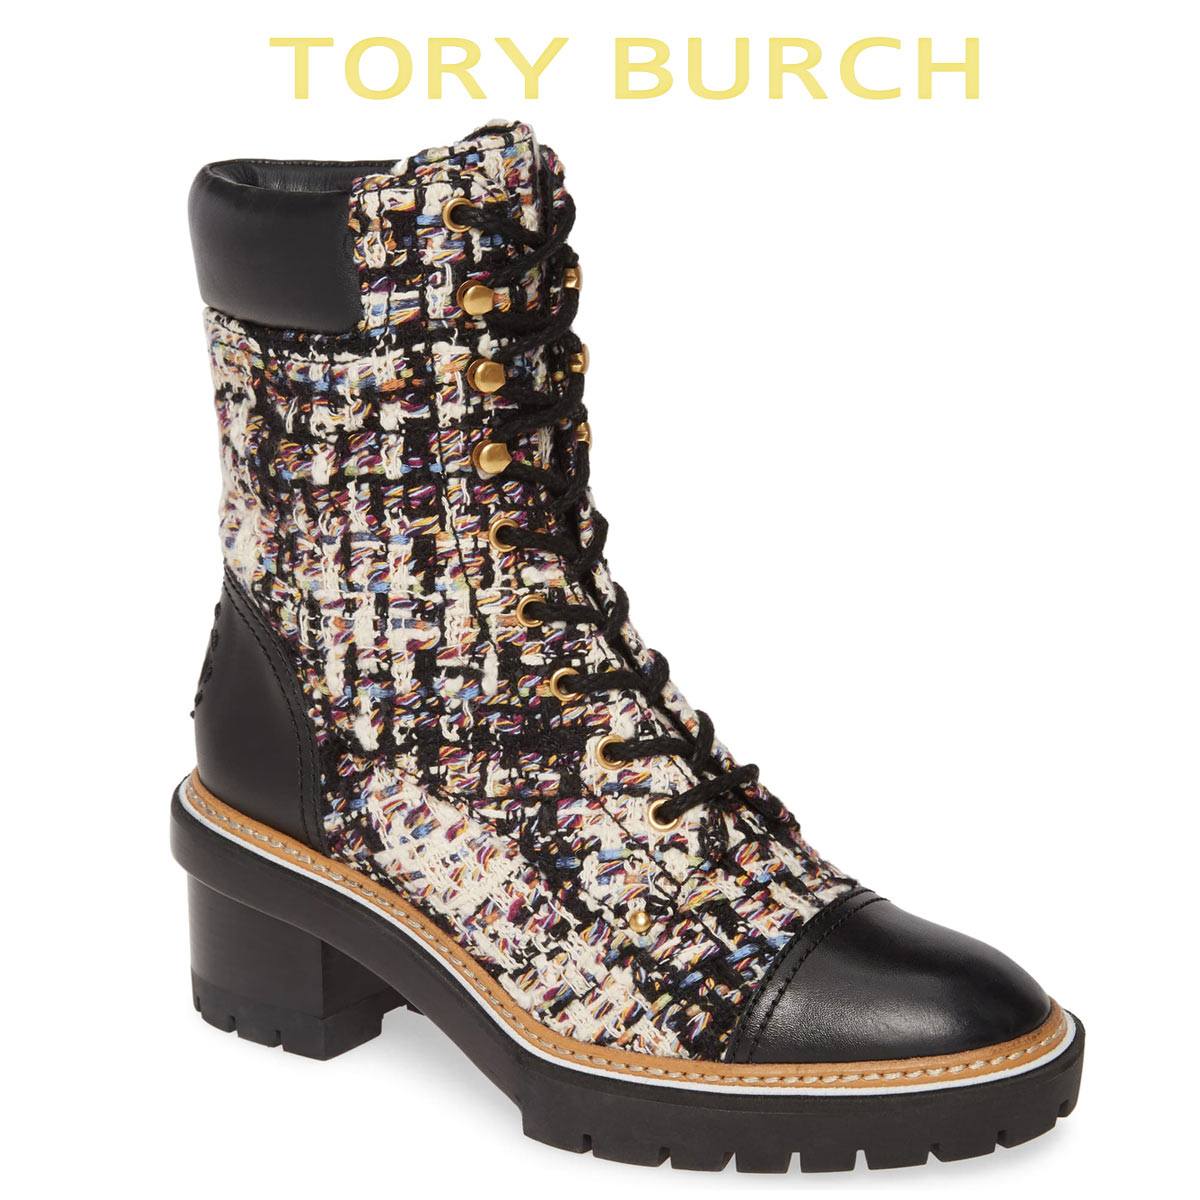 トリーバーチ ブーツ シューズ 靴 レディース 大きいサイズ あり ブーティ 本革 ショートブーツ Tory Burch